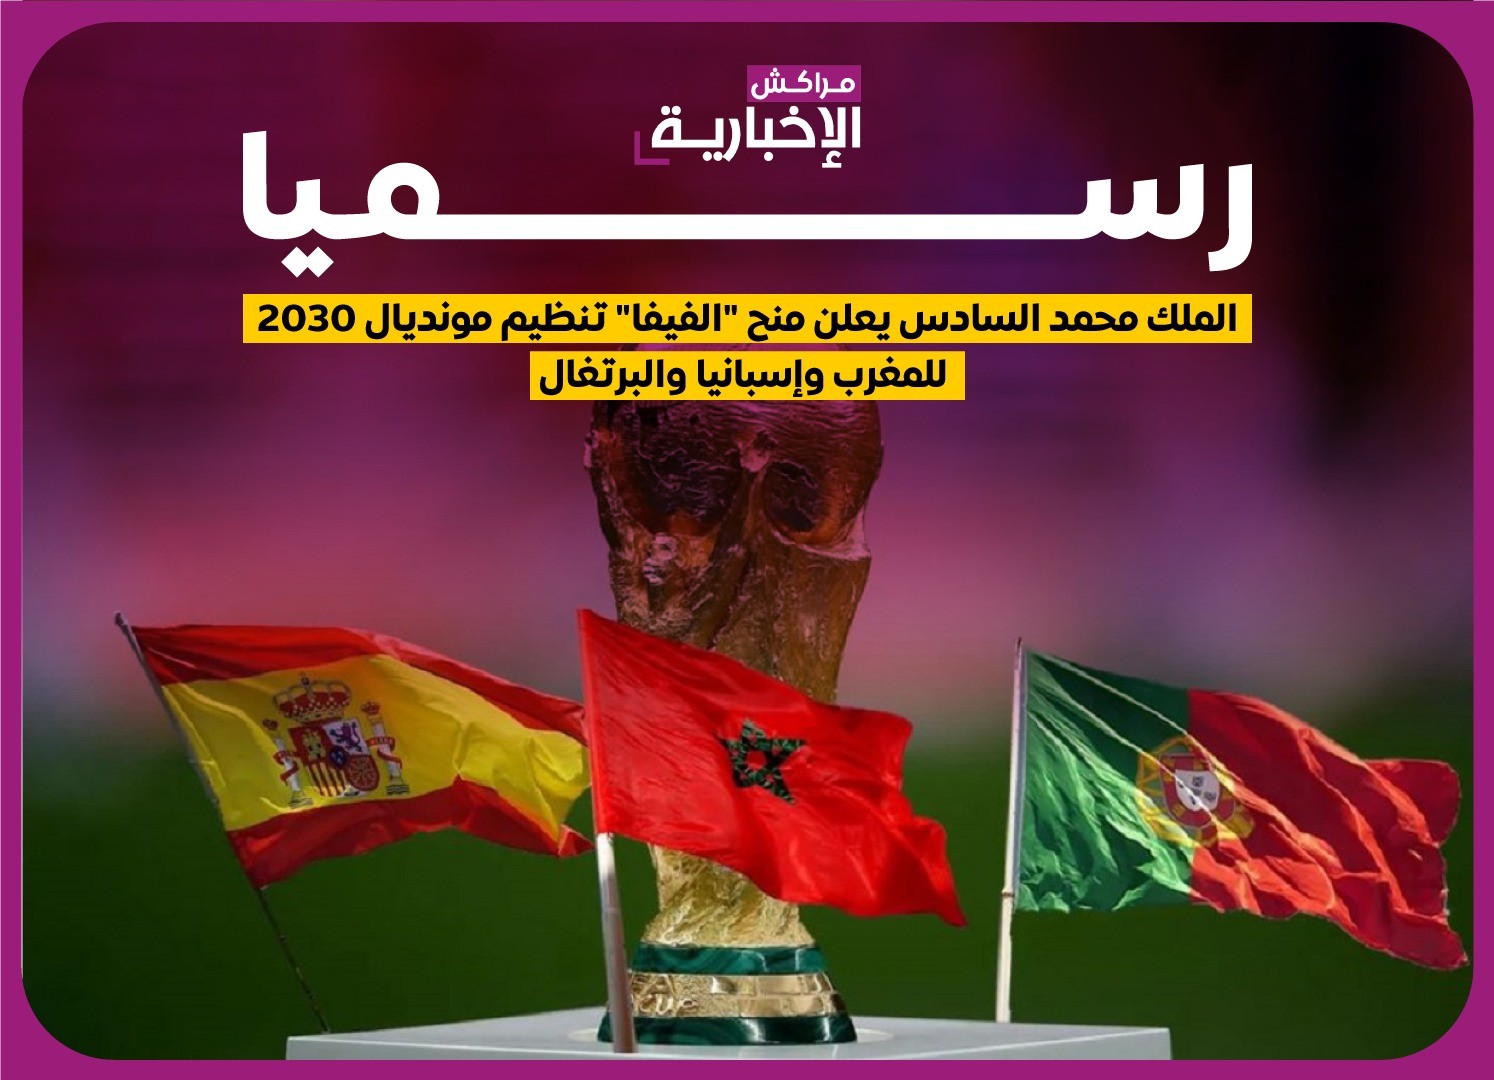 رسميا.. اختيار الملف الثلاثي المغرب-البرتغال-إسبانيا لتنظيم كأس العالم 2030